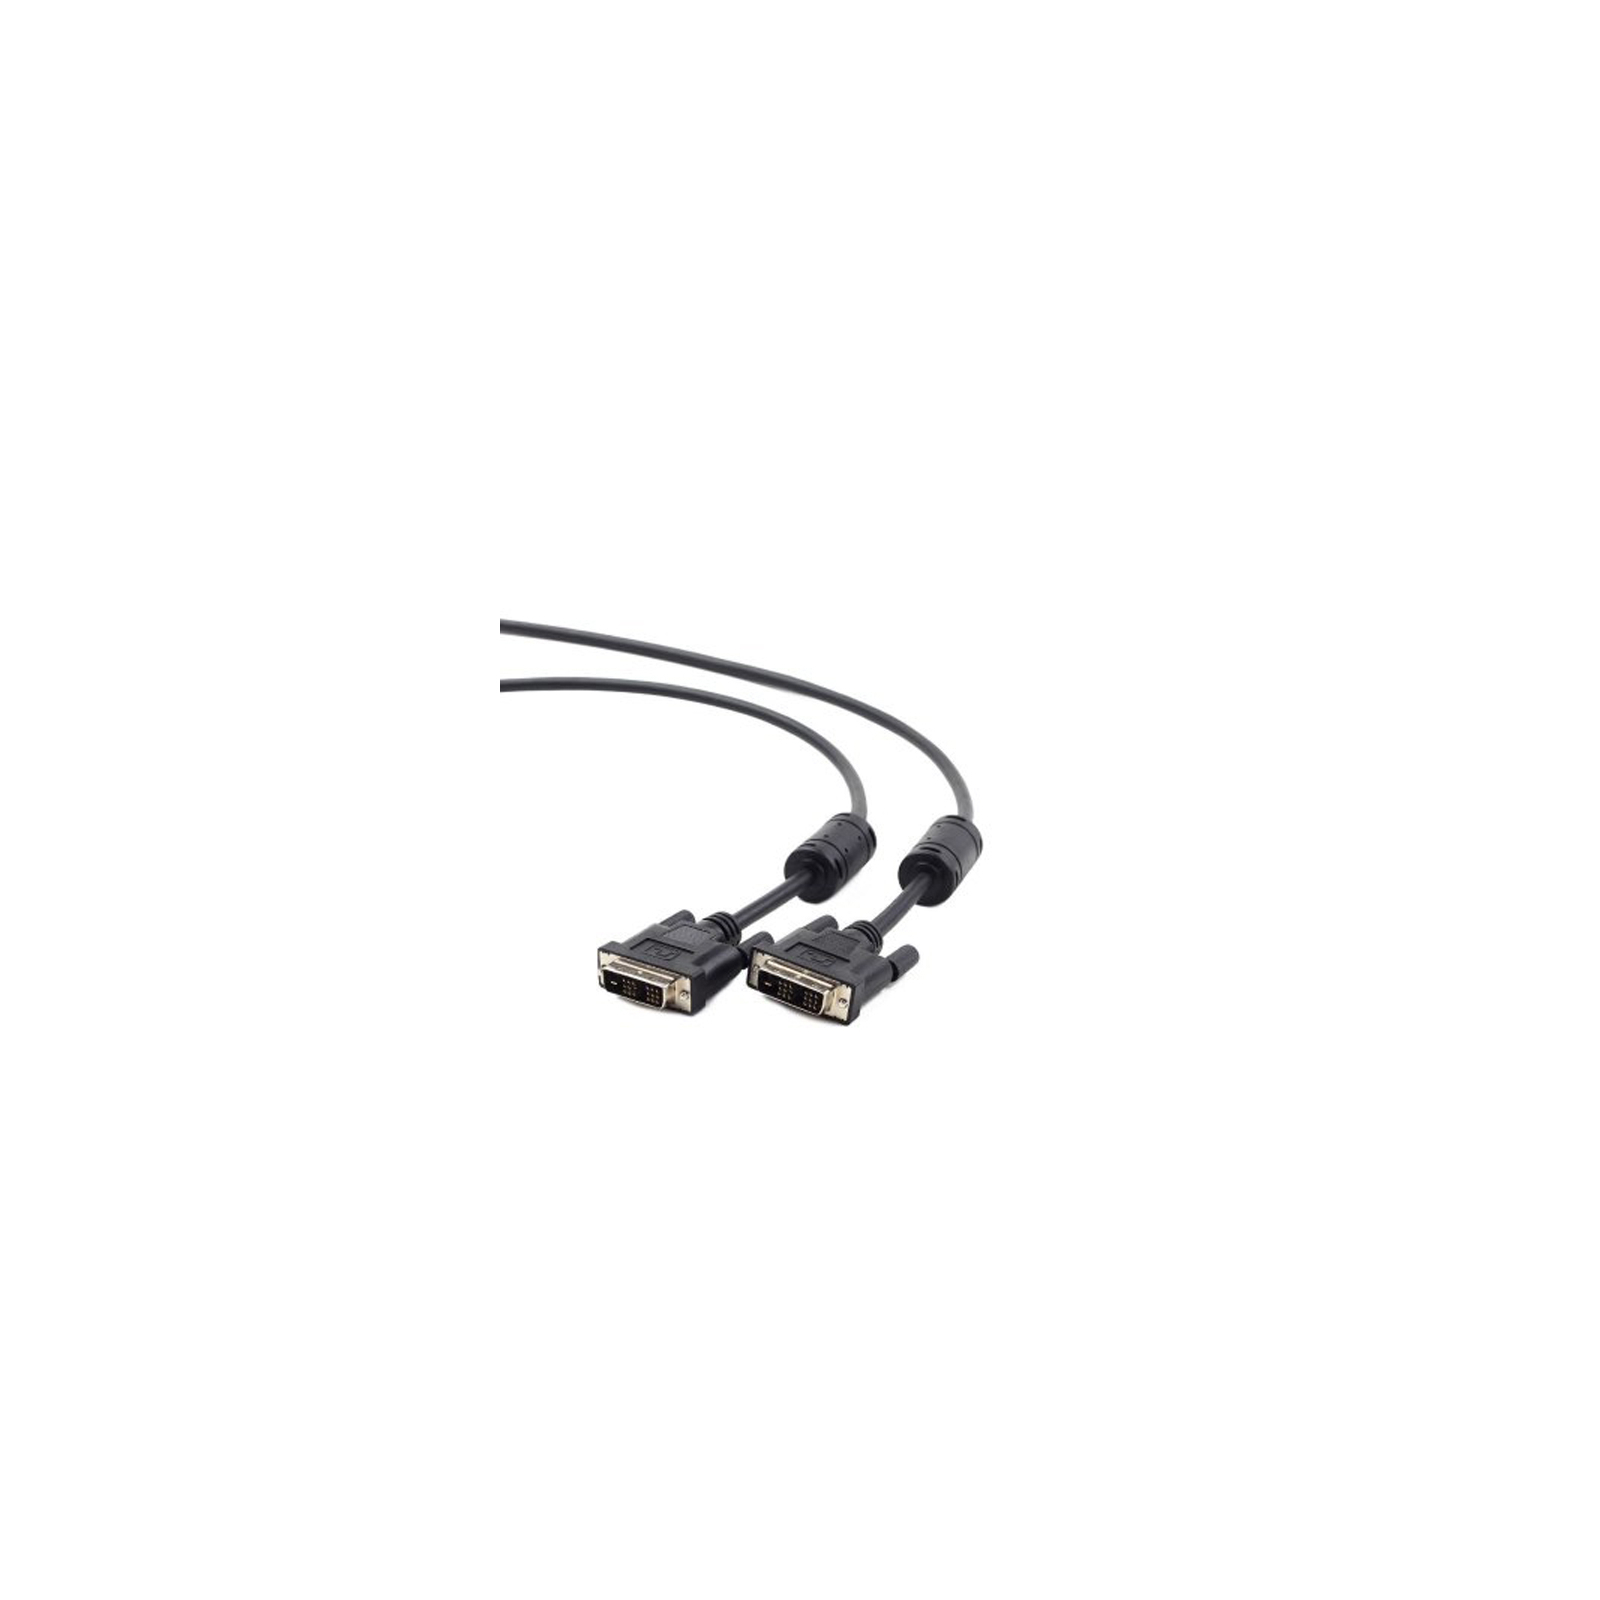 Кабель мультимедійний DVI to DVI 18+1pin, 1.8m Cablexpert (CC-DVI-BK-6)